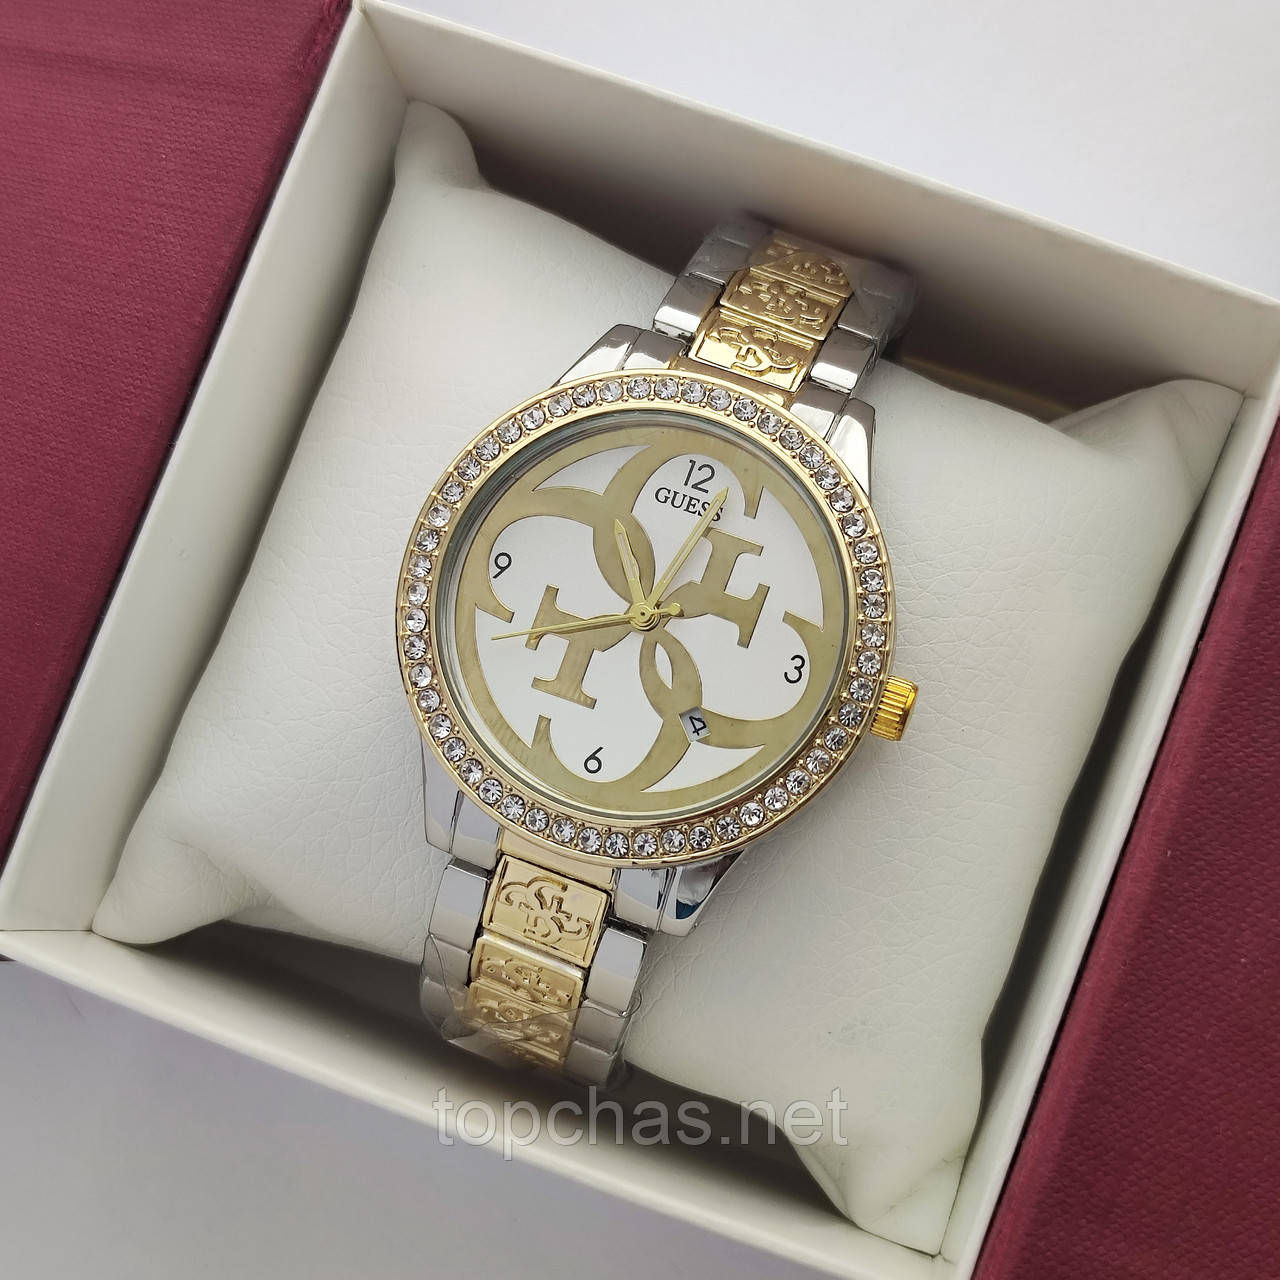 Жіночий наручний годинник Guess (Гес) комбінований, камінчики навколо циферблата - код 2371b